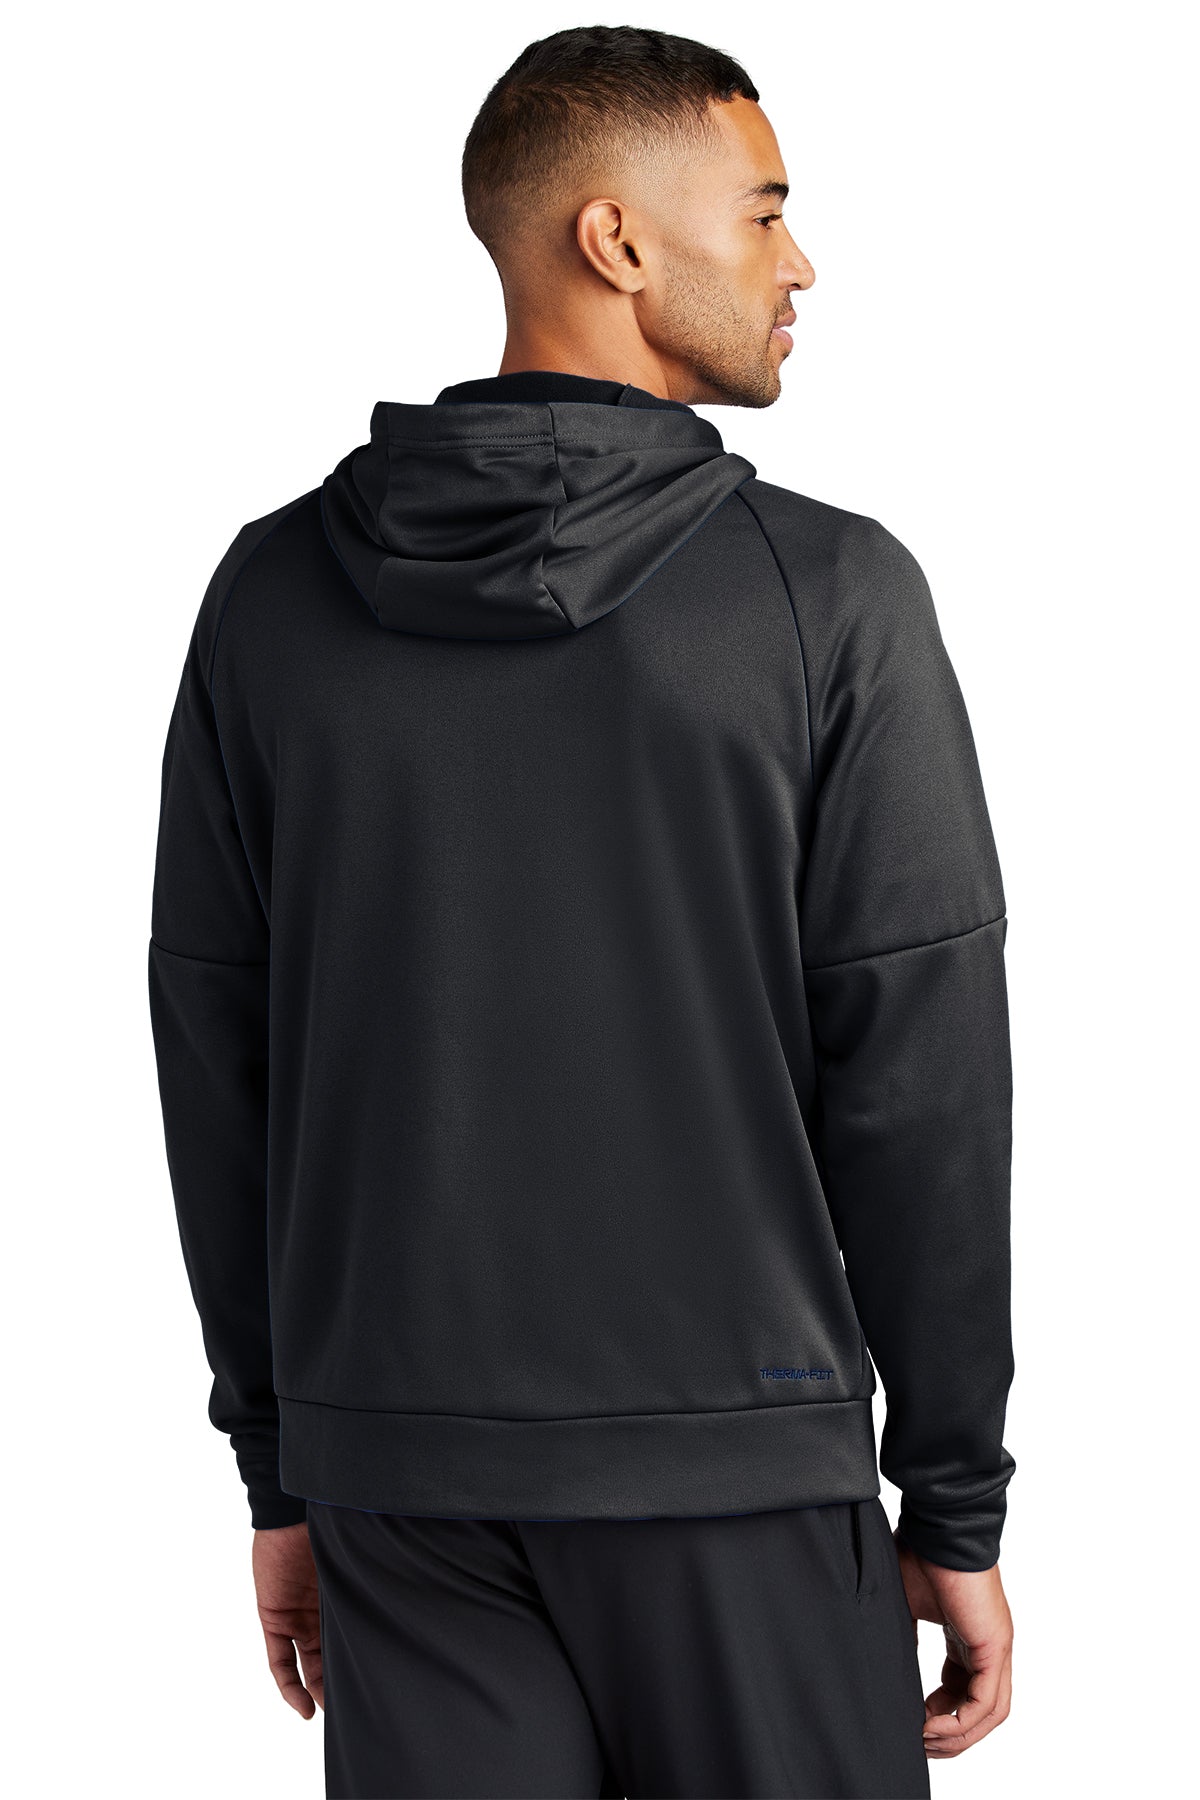 Nike Therma-FIT Pocket ZipUp Custom Hoodies, Black